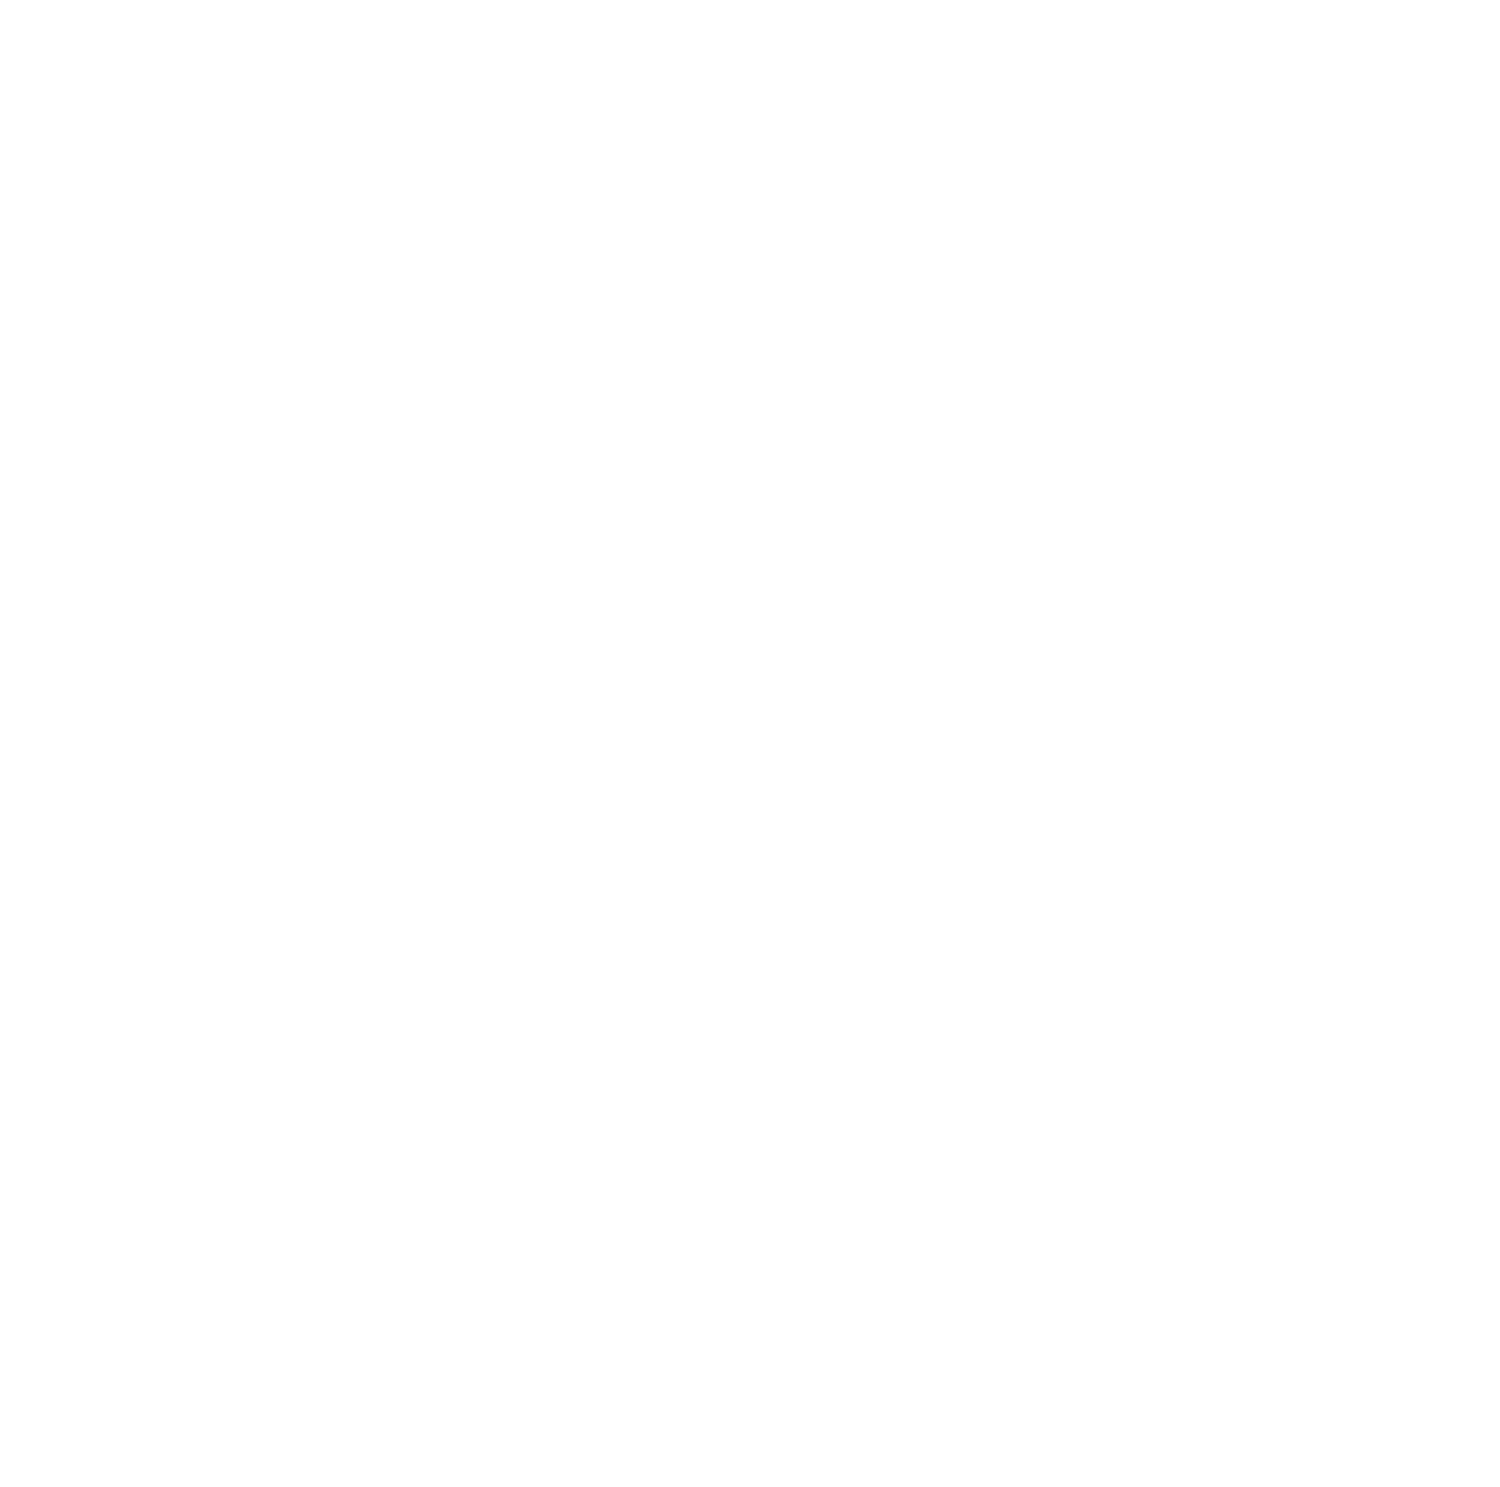 Warrior Ice Arena Online Store